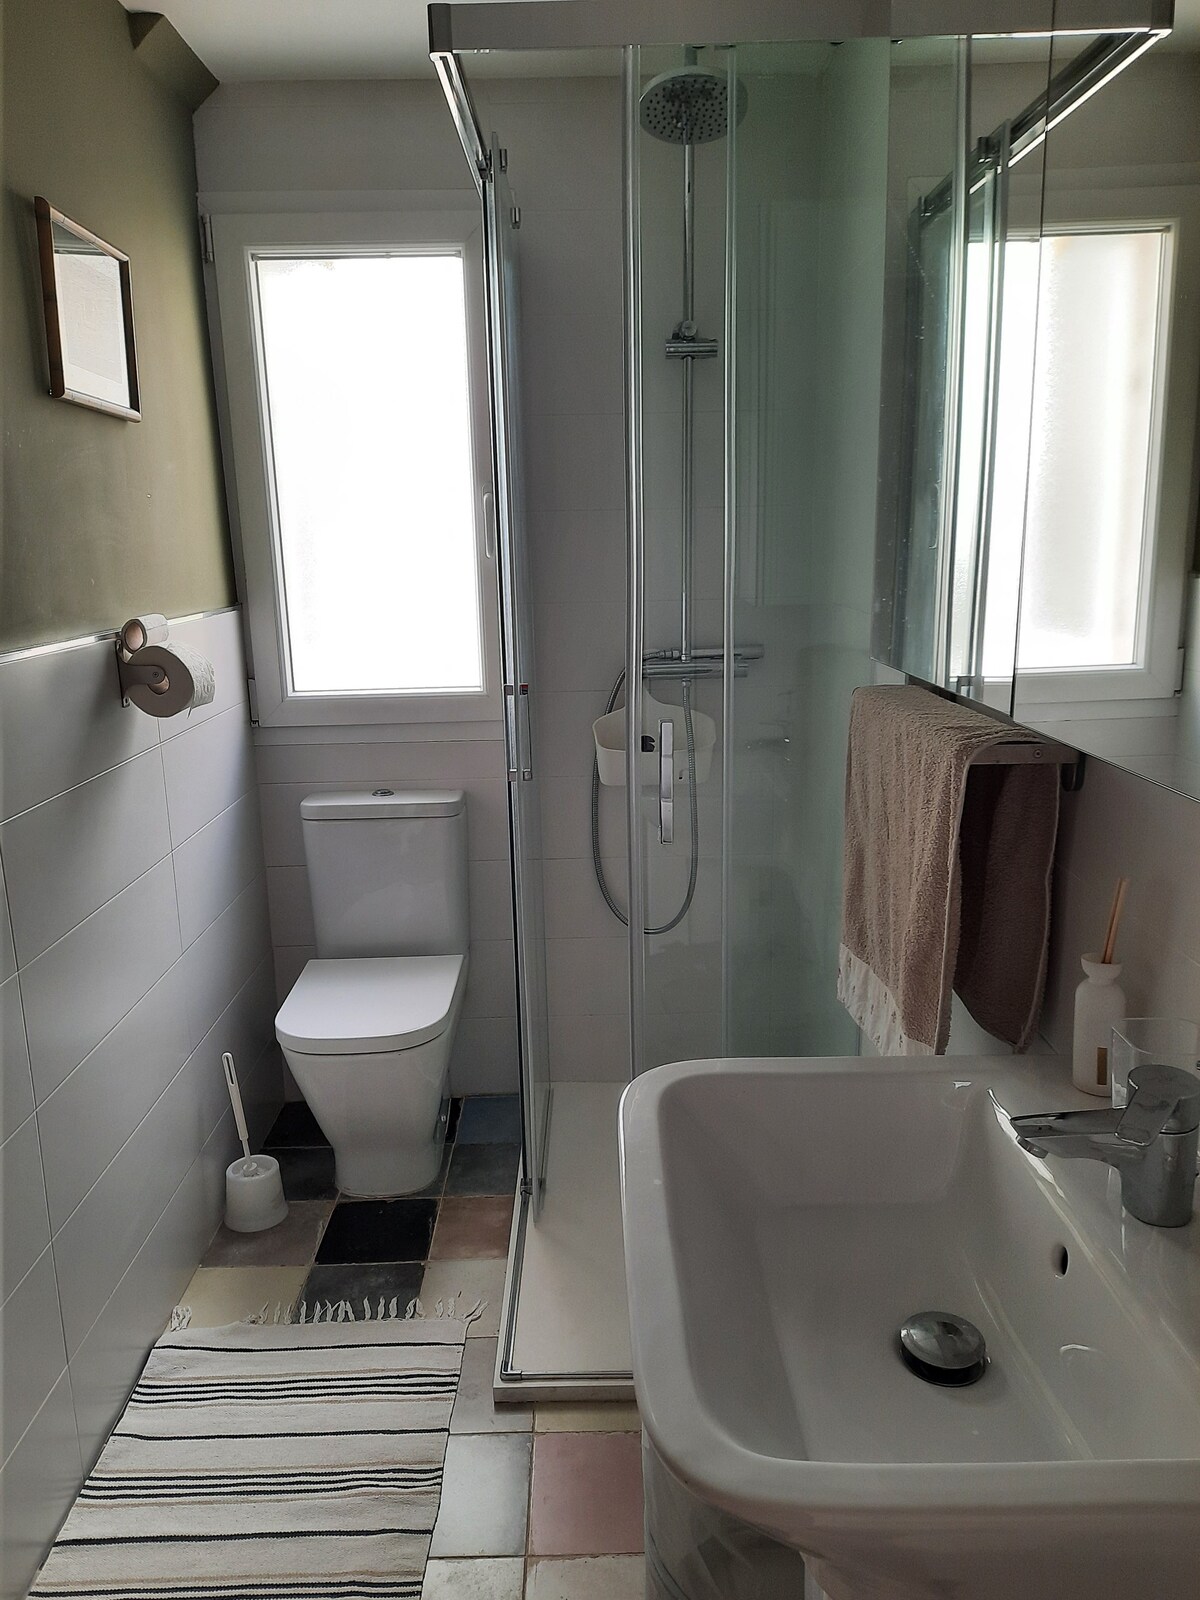 Habitación cómoda y céntrica con baño privado.